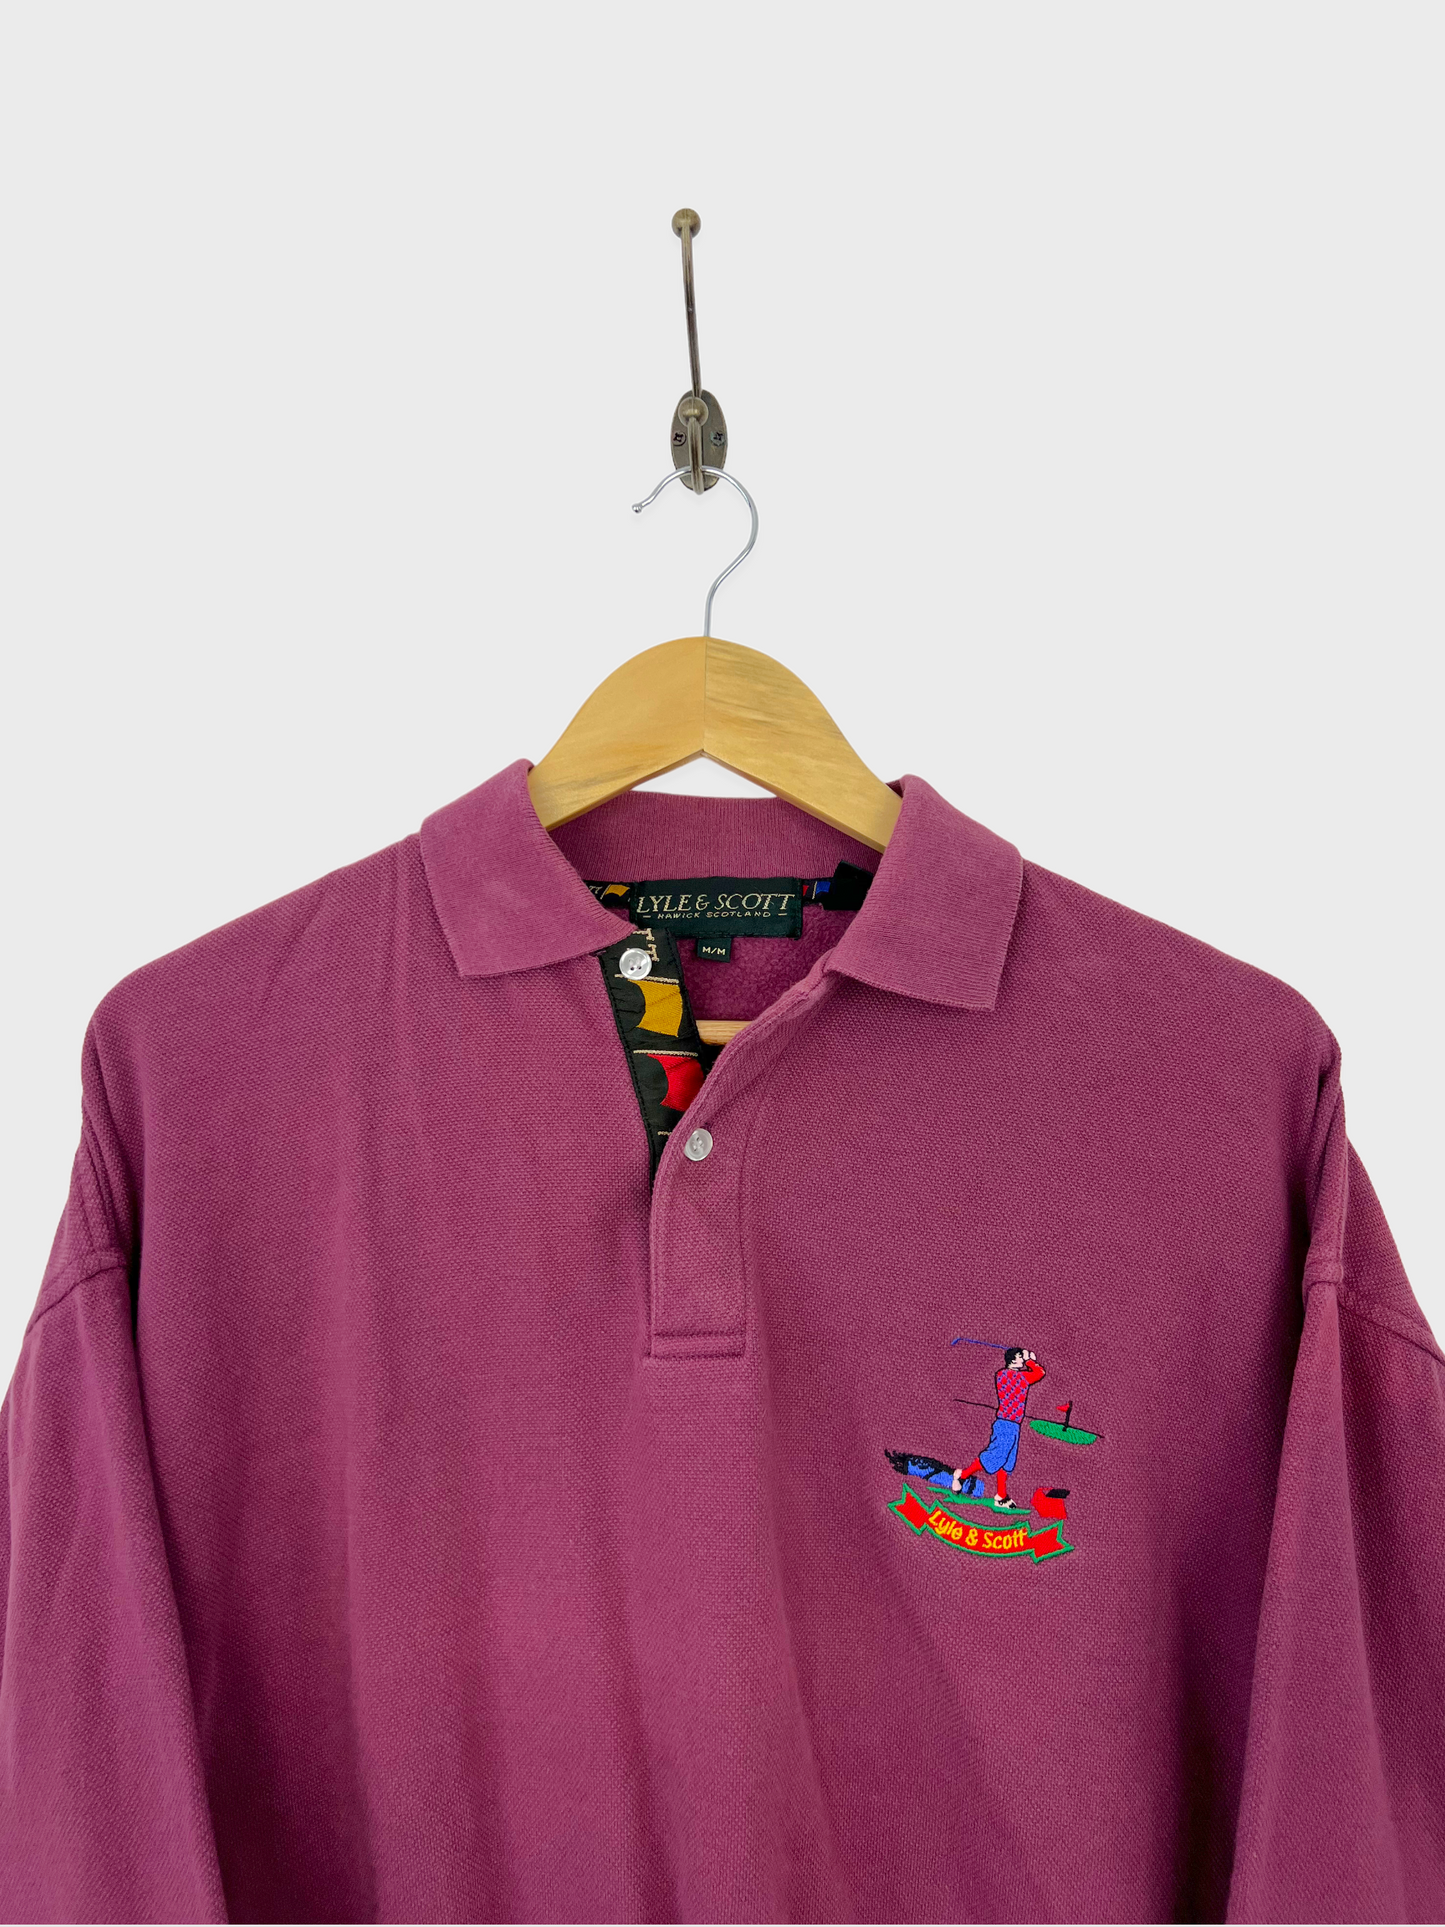 90's Lyle & Scott Golf Embroidered Vintage Collared Sweatshirt Size M-L